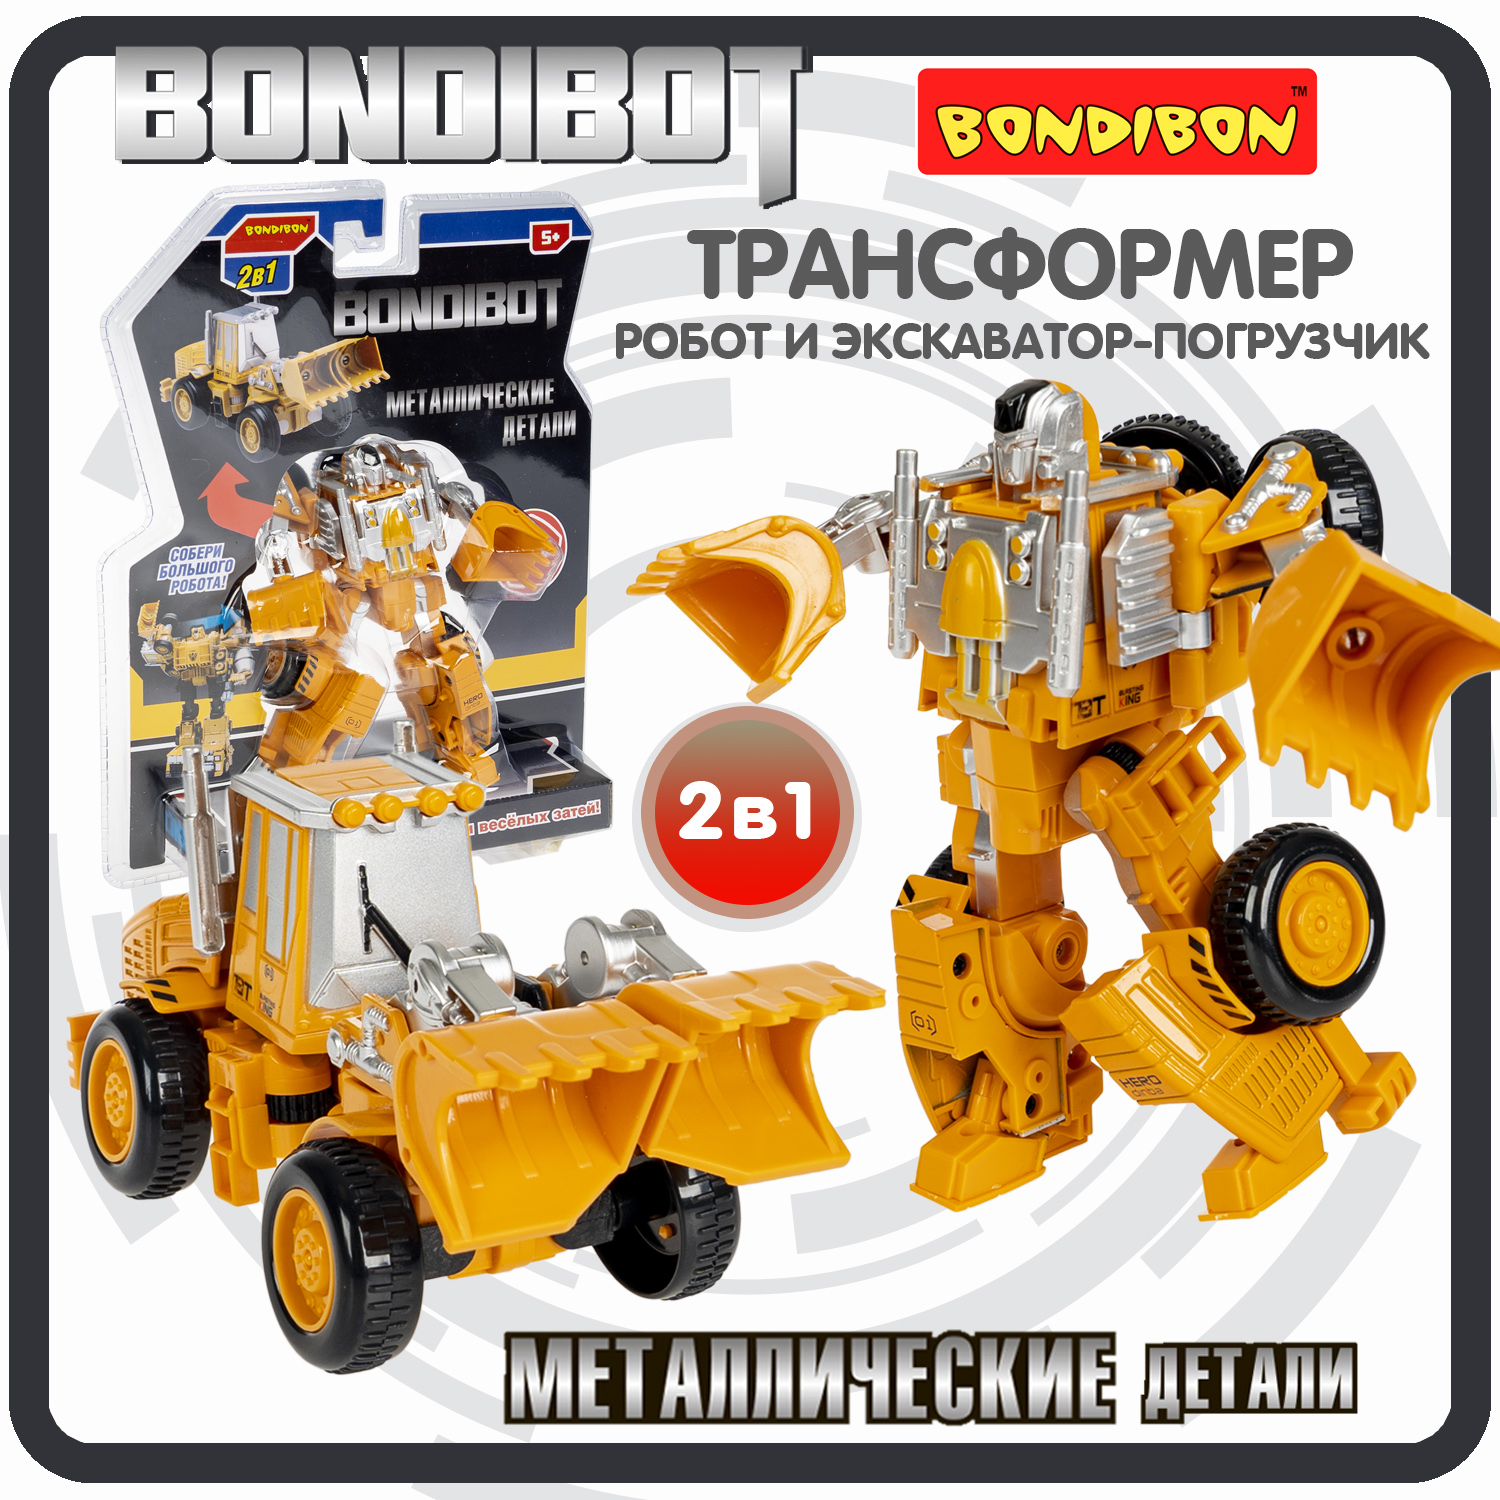 Робот трансформер 2в1 Bondibon BONDIBOT машинка экскаватор-погрузчик bondibon трансформер bondibot 2 в 1 робот экскаватор